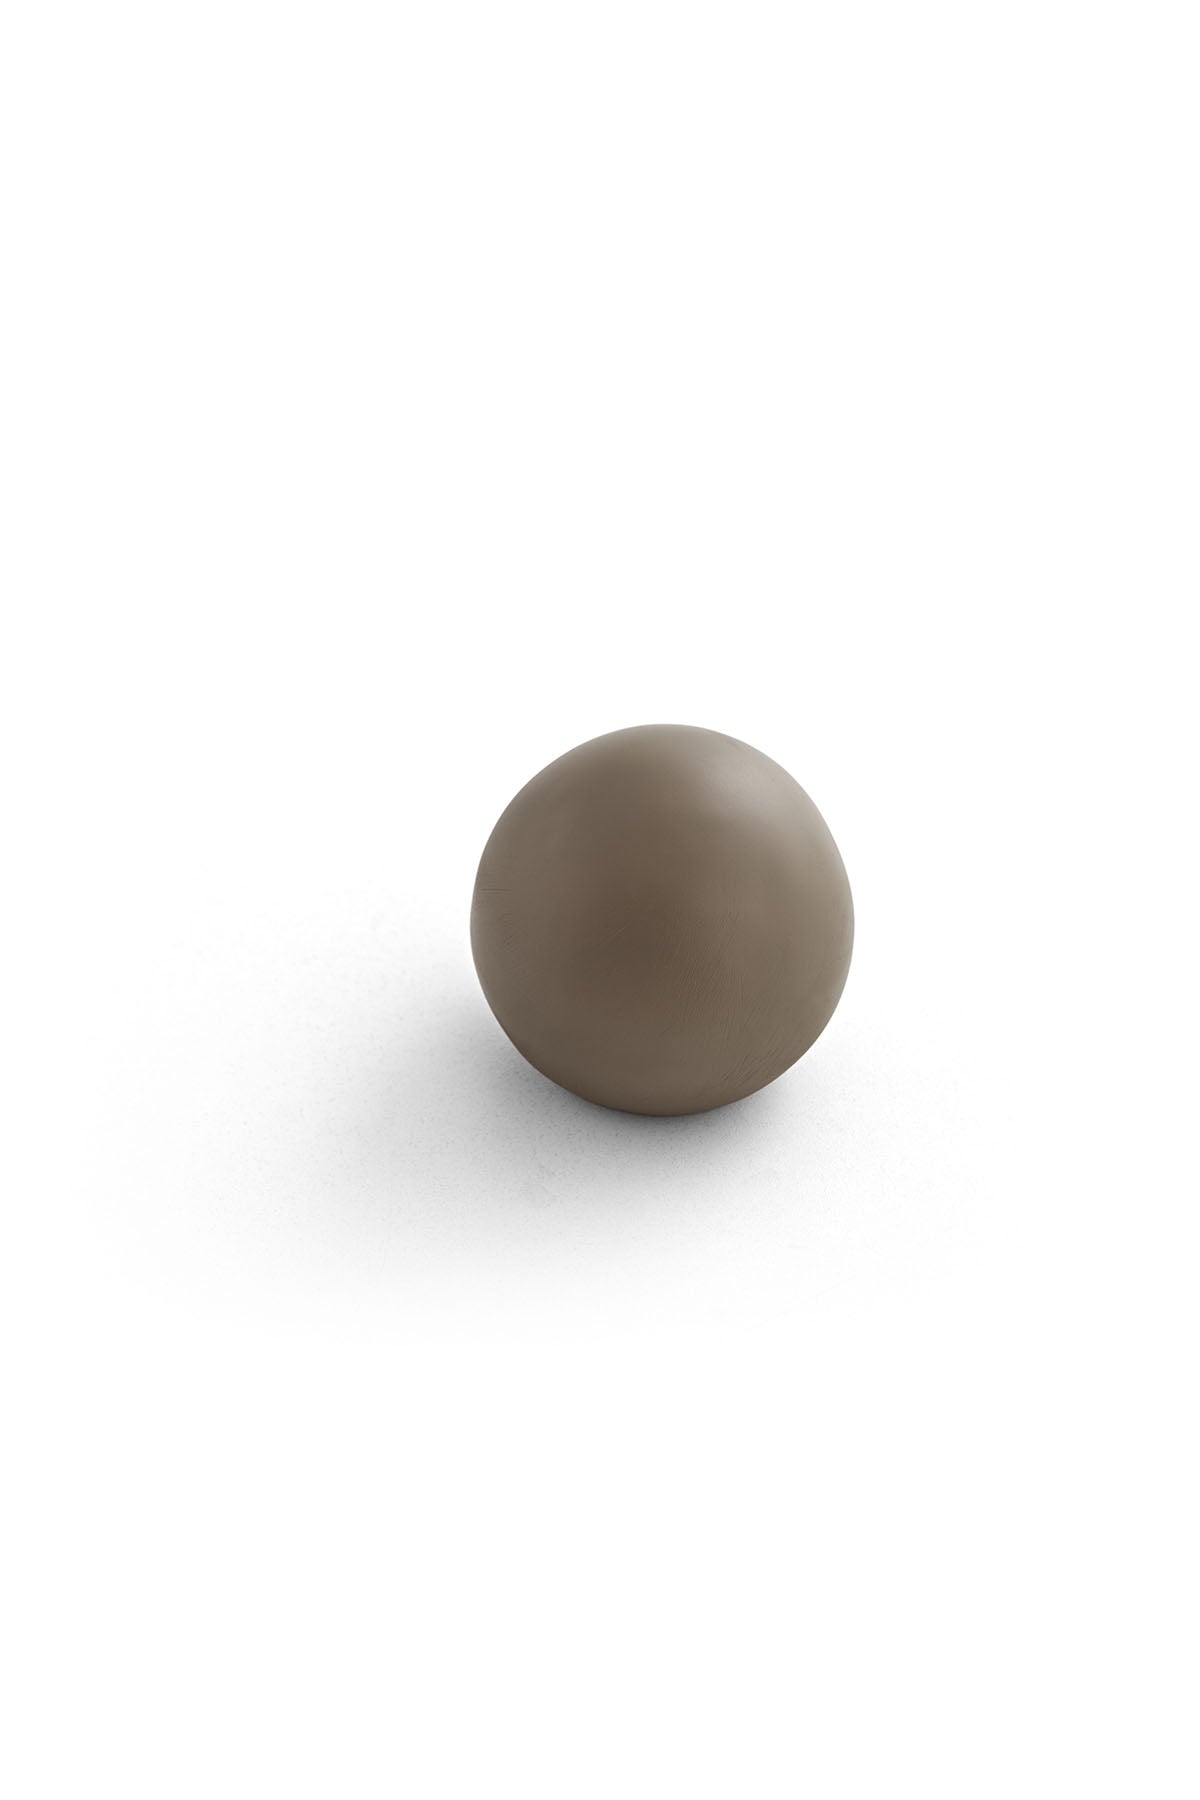 Ball Object